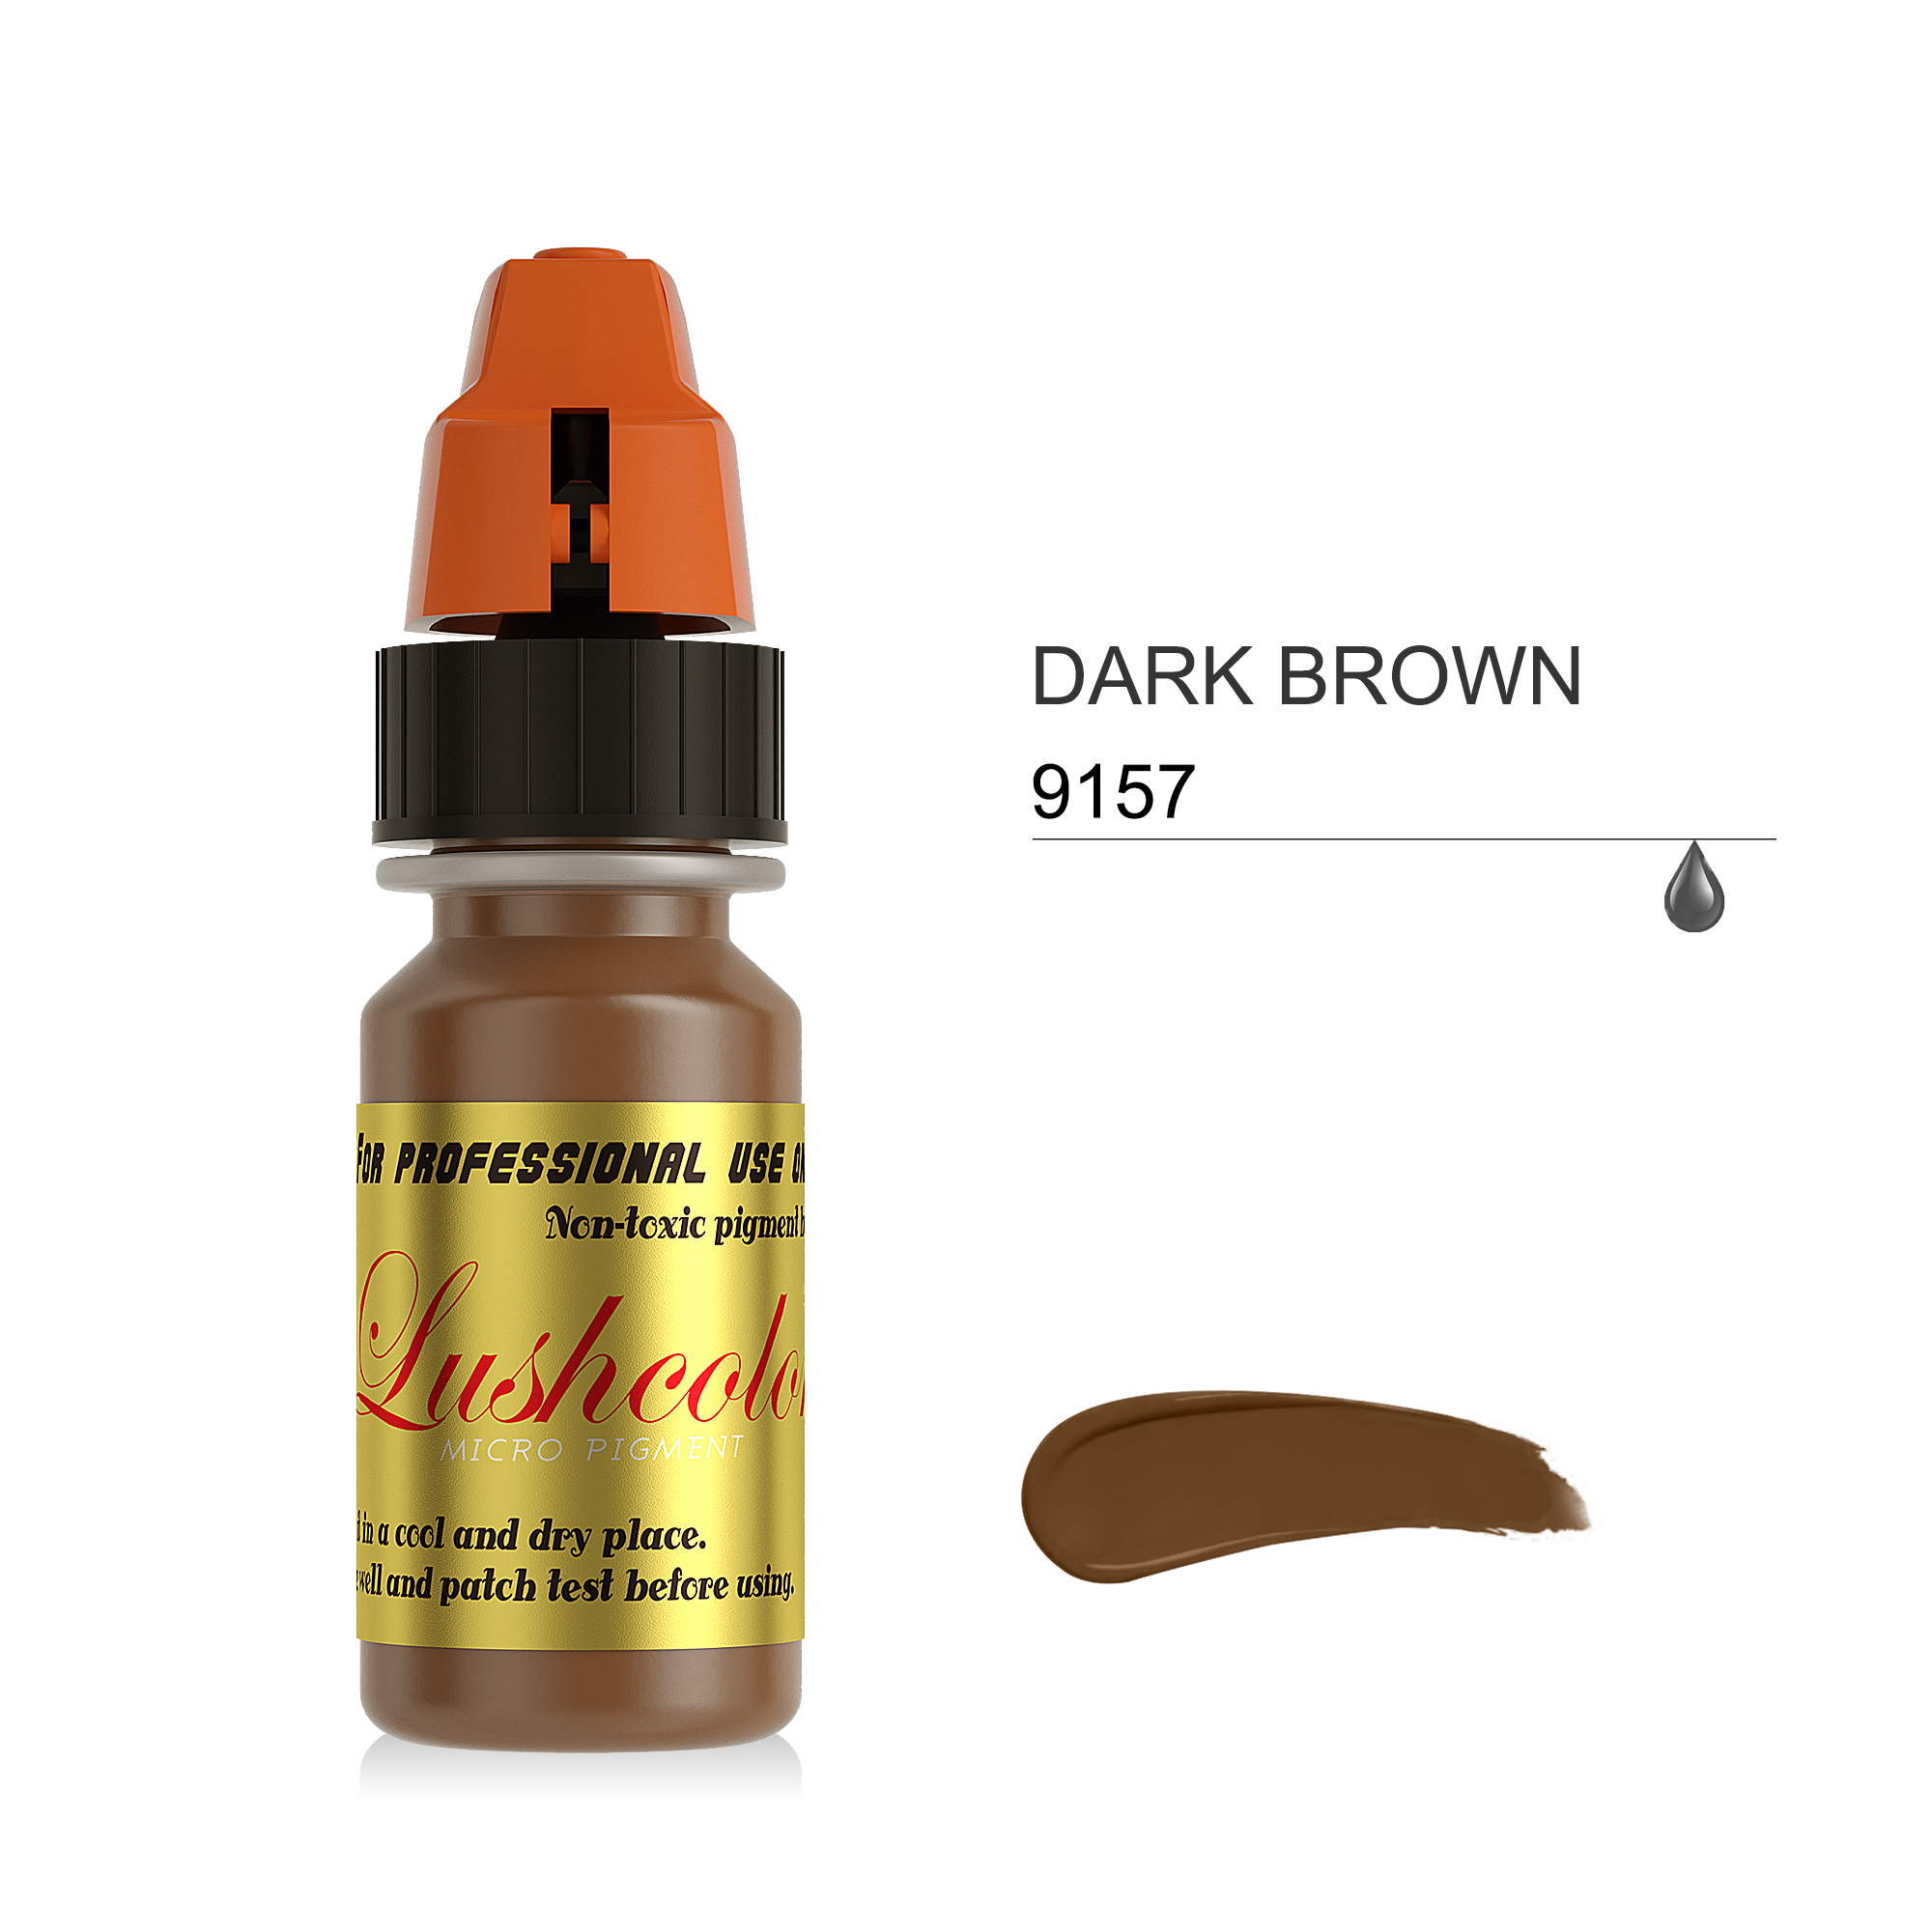 9157 DARK BROWN LUSHCOLOR Micro Semi Cream Pigments